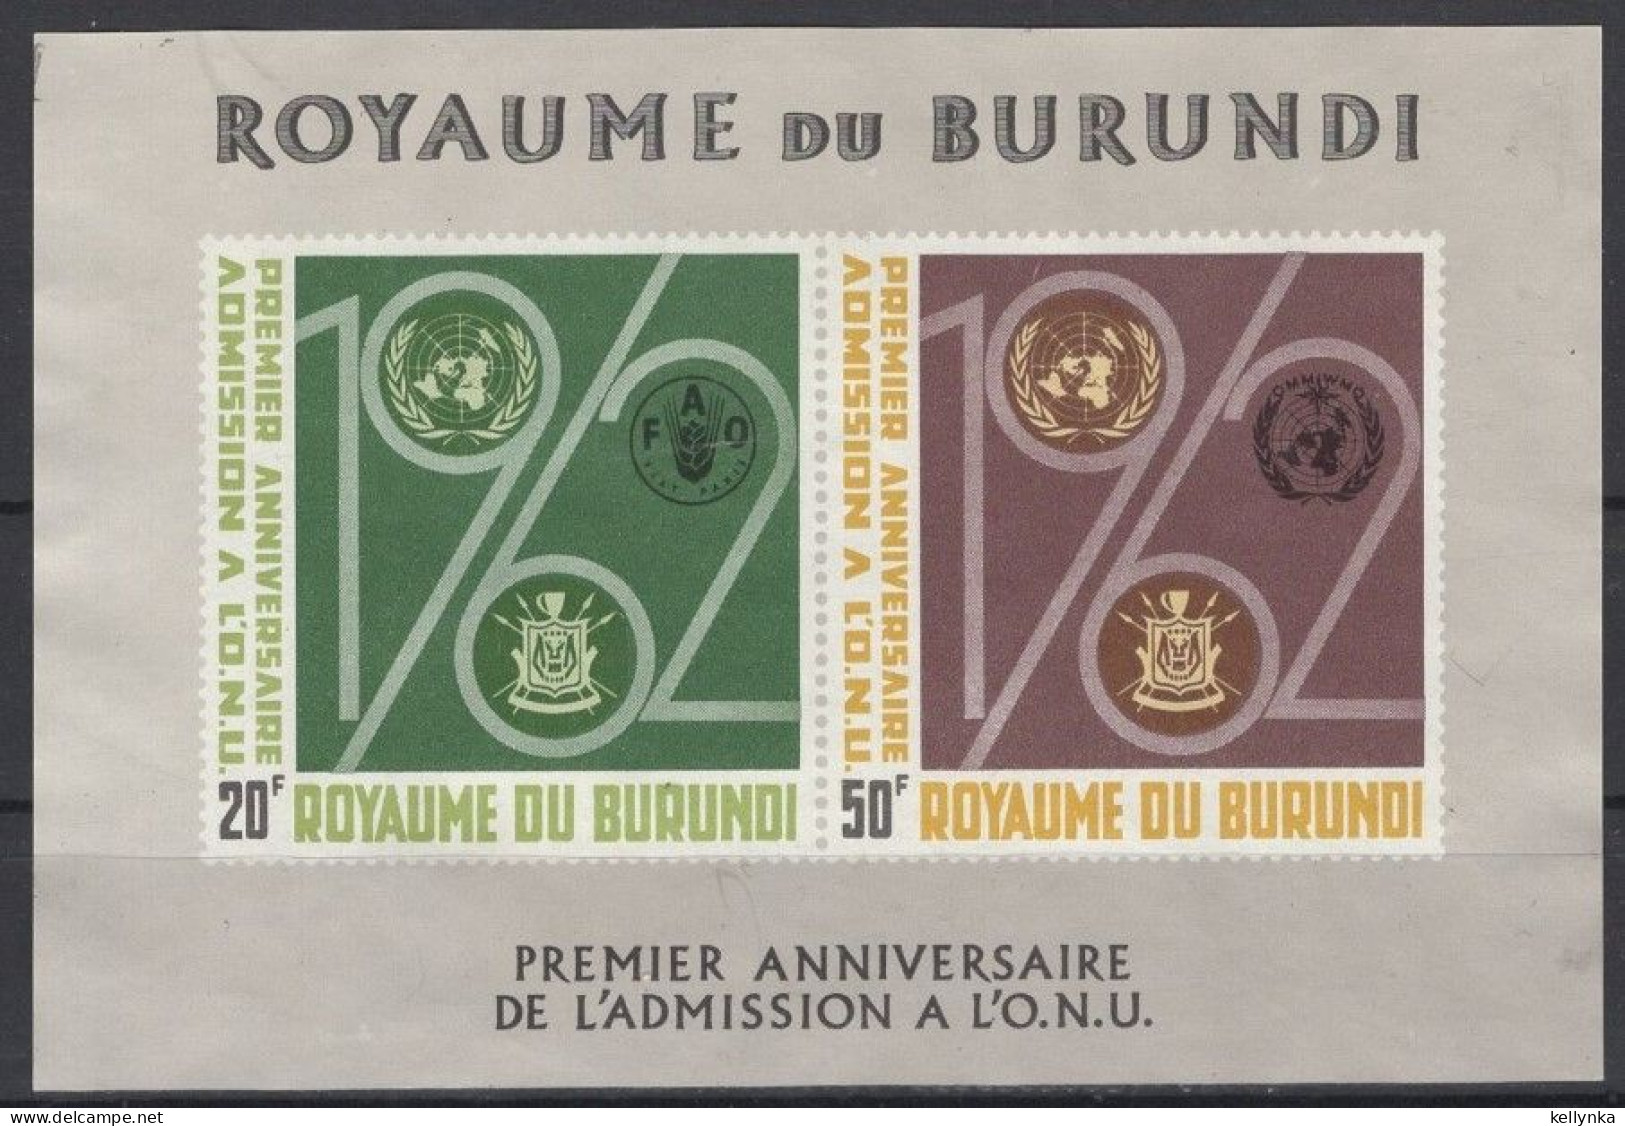 Burundi - BL2 - ONU - 1963 - MNH - Nuevos